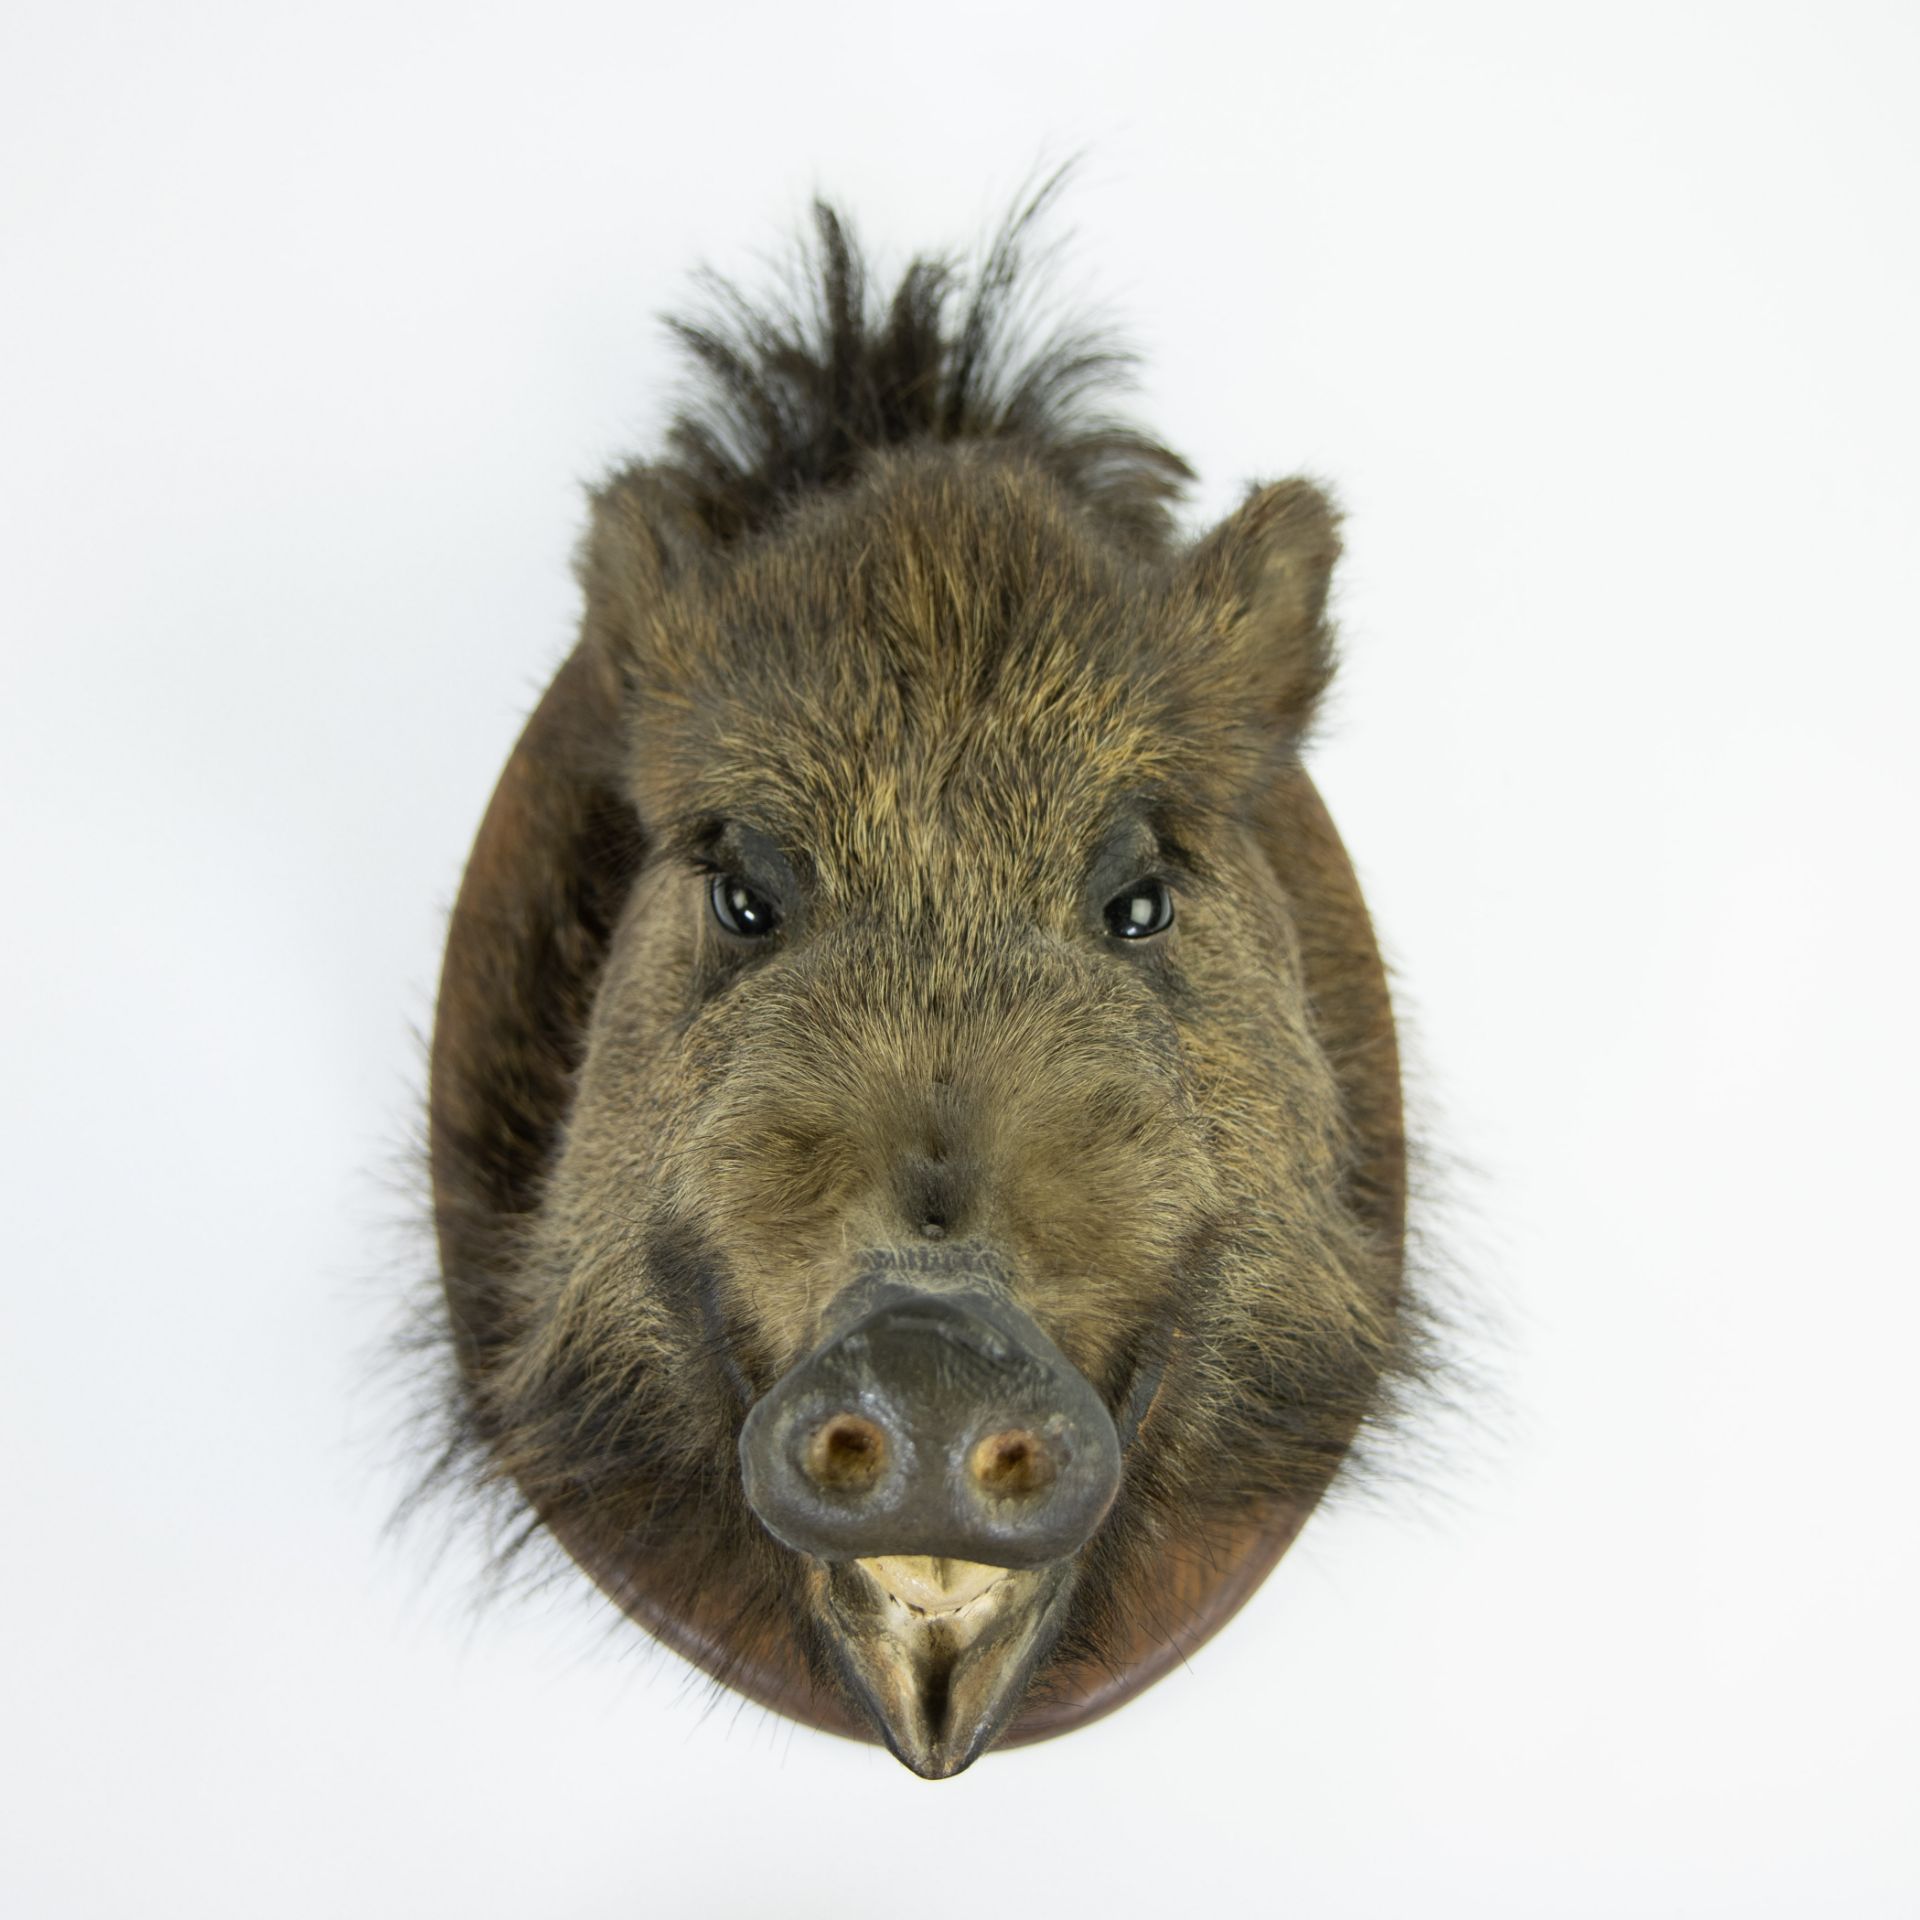 Taxidermy, head of a wild boar